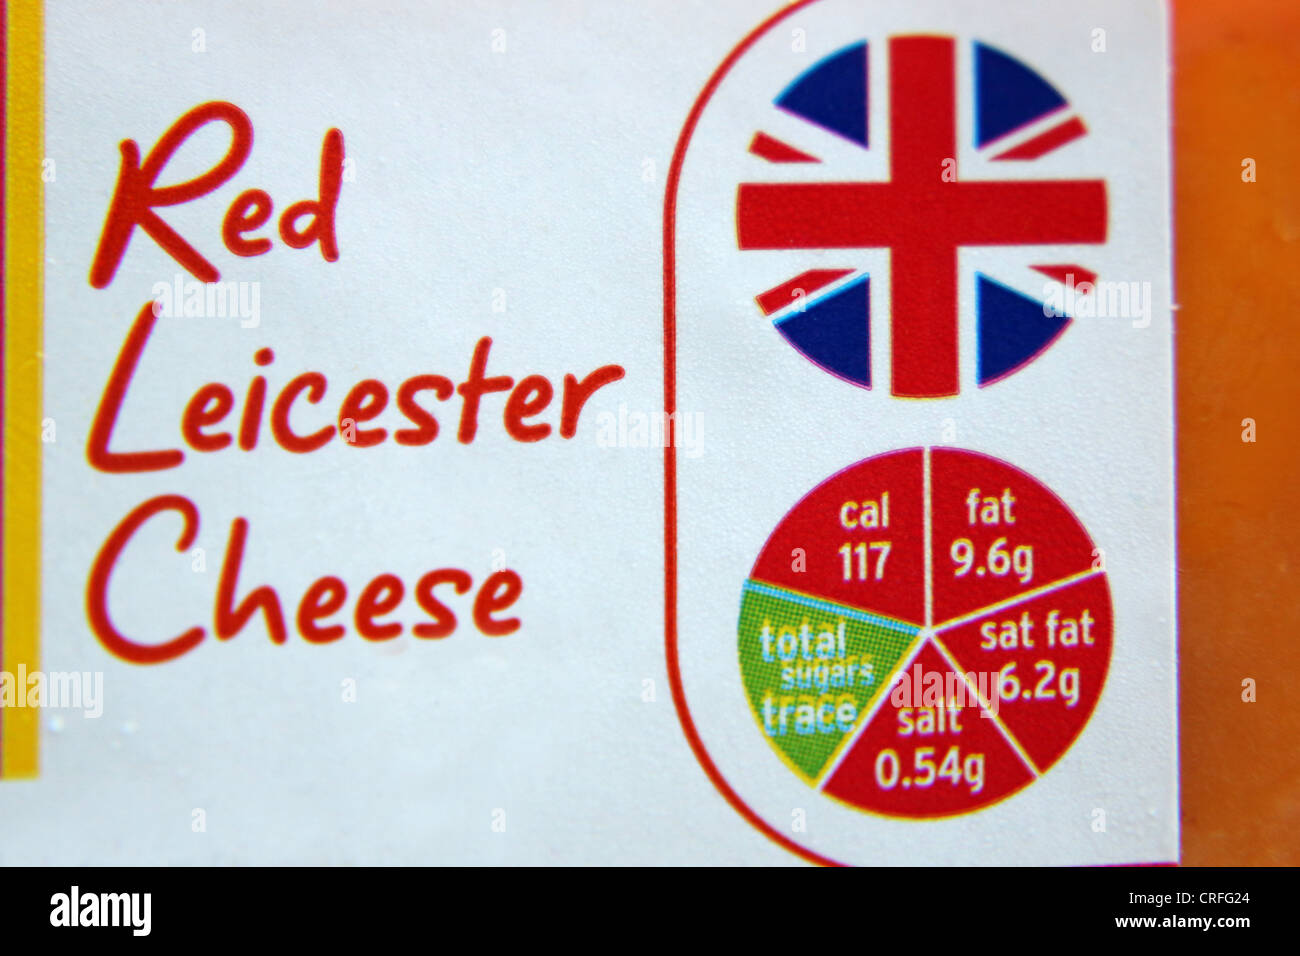 Emballage de fromage Leicester rouge montrant Calories, lipides, graisses saturées, sucres et sel dans un système de feux de circulation Banque D'Images